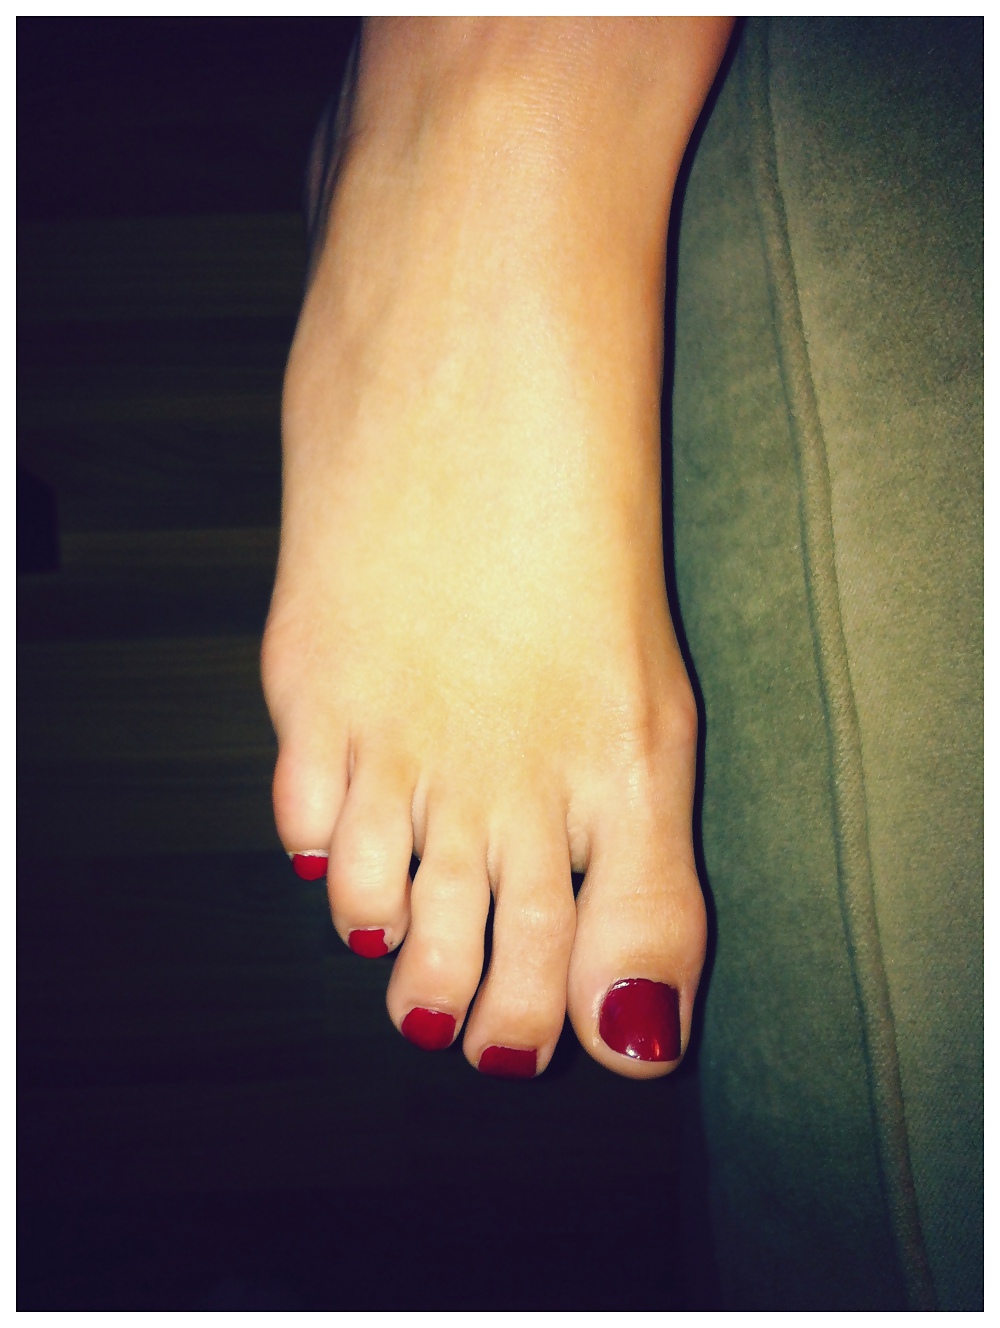 Los pies de Jackie y sus largos y sexys dedos.
 #17340939